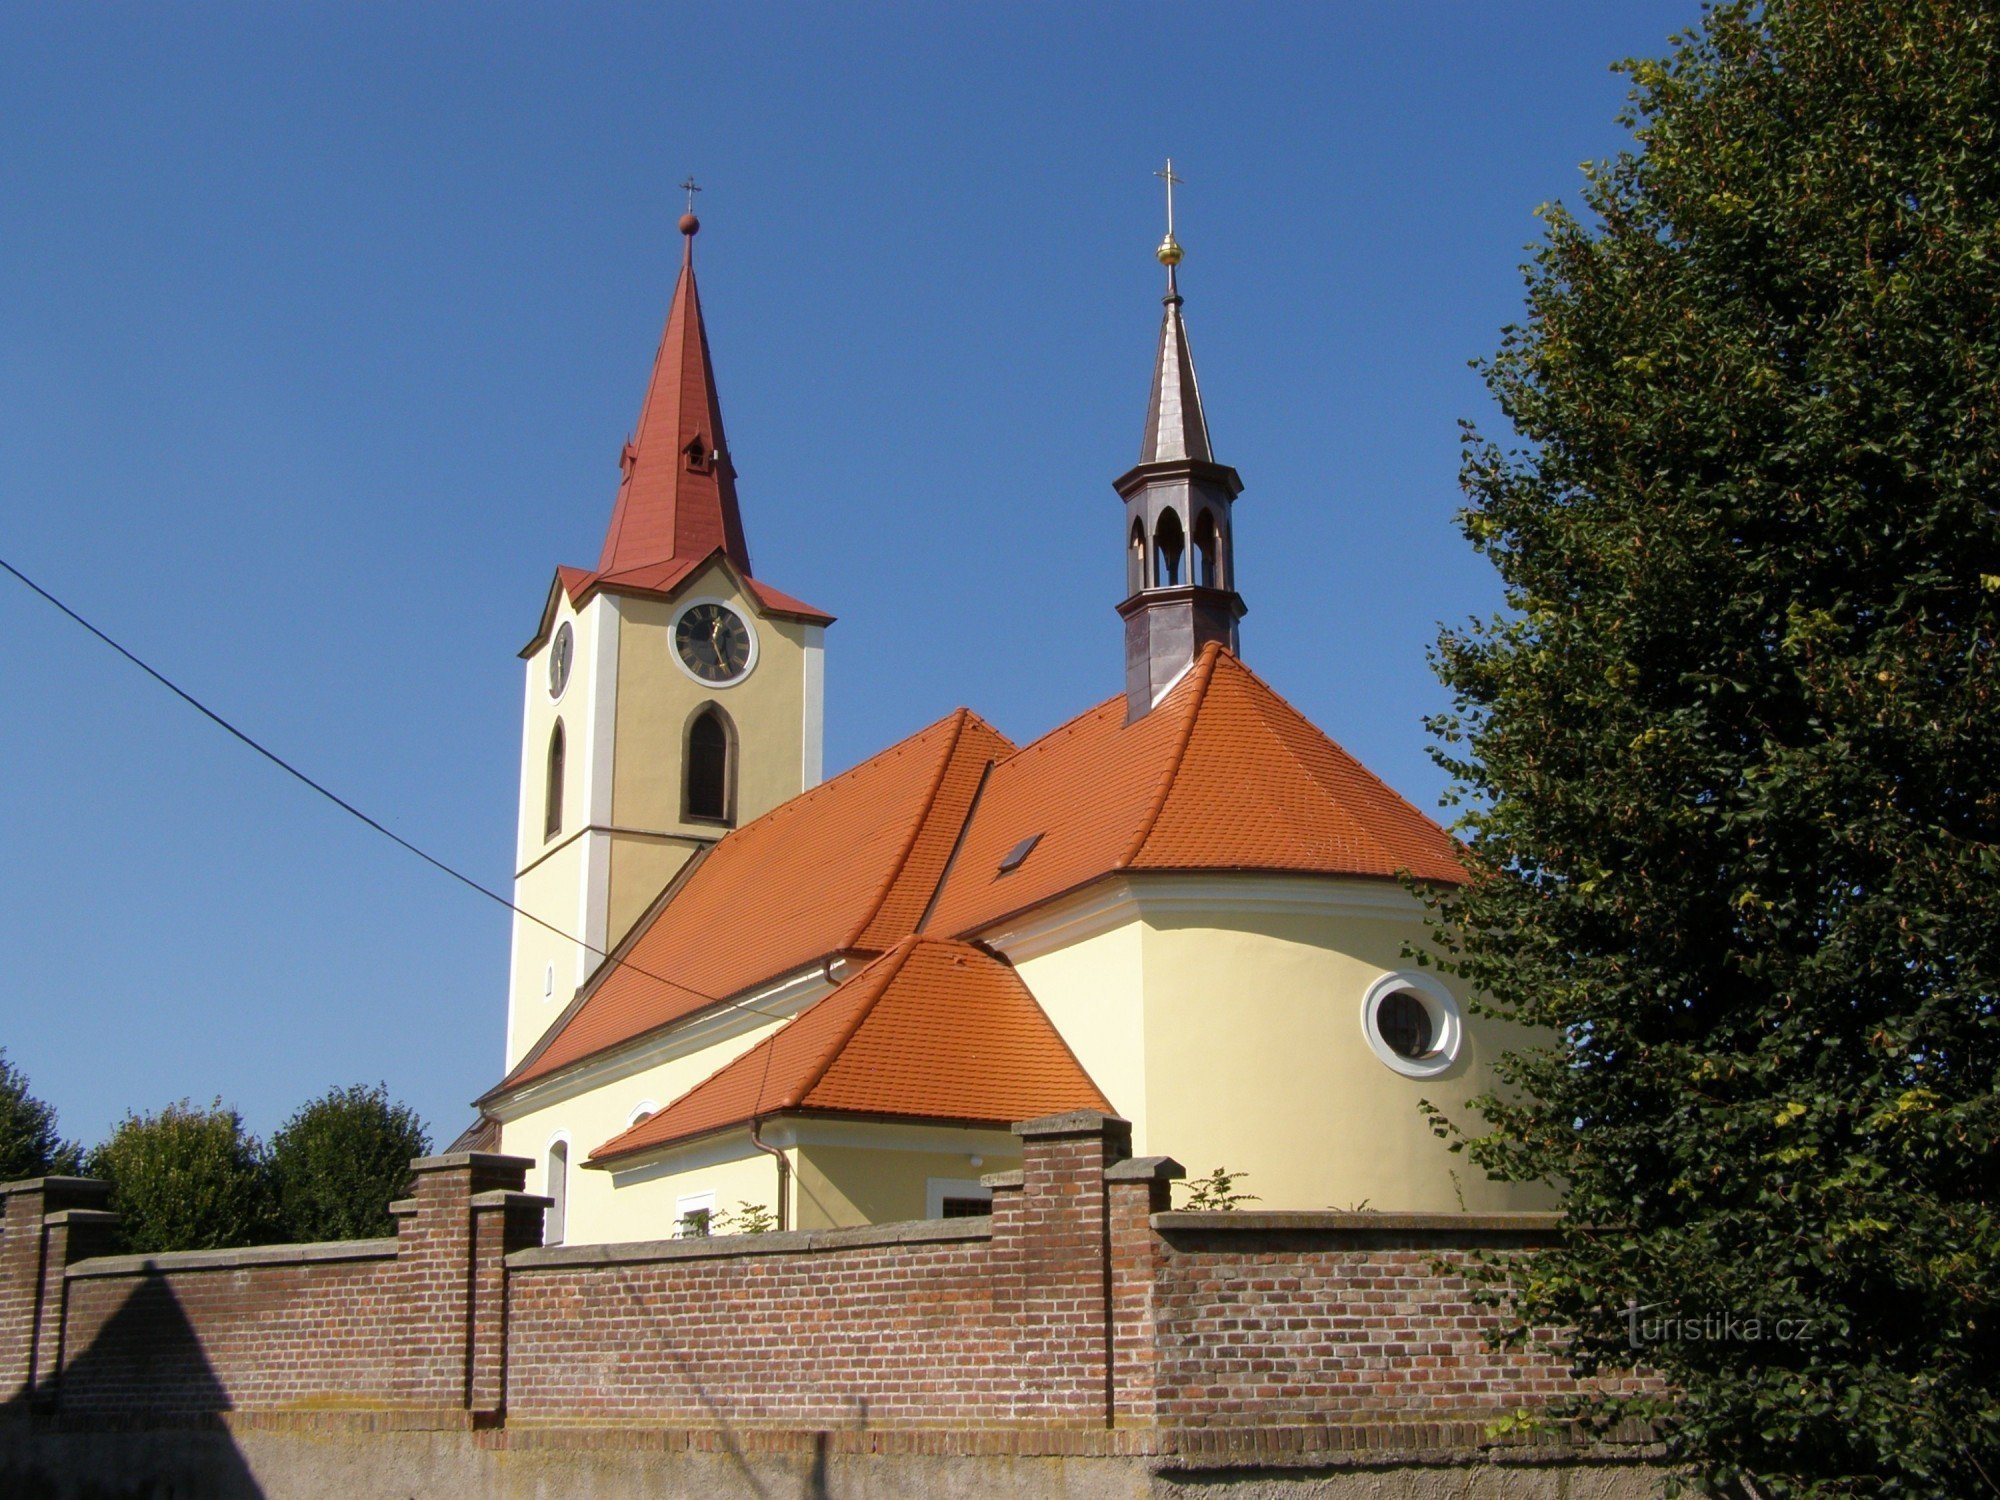 Jasenná - church of St. George